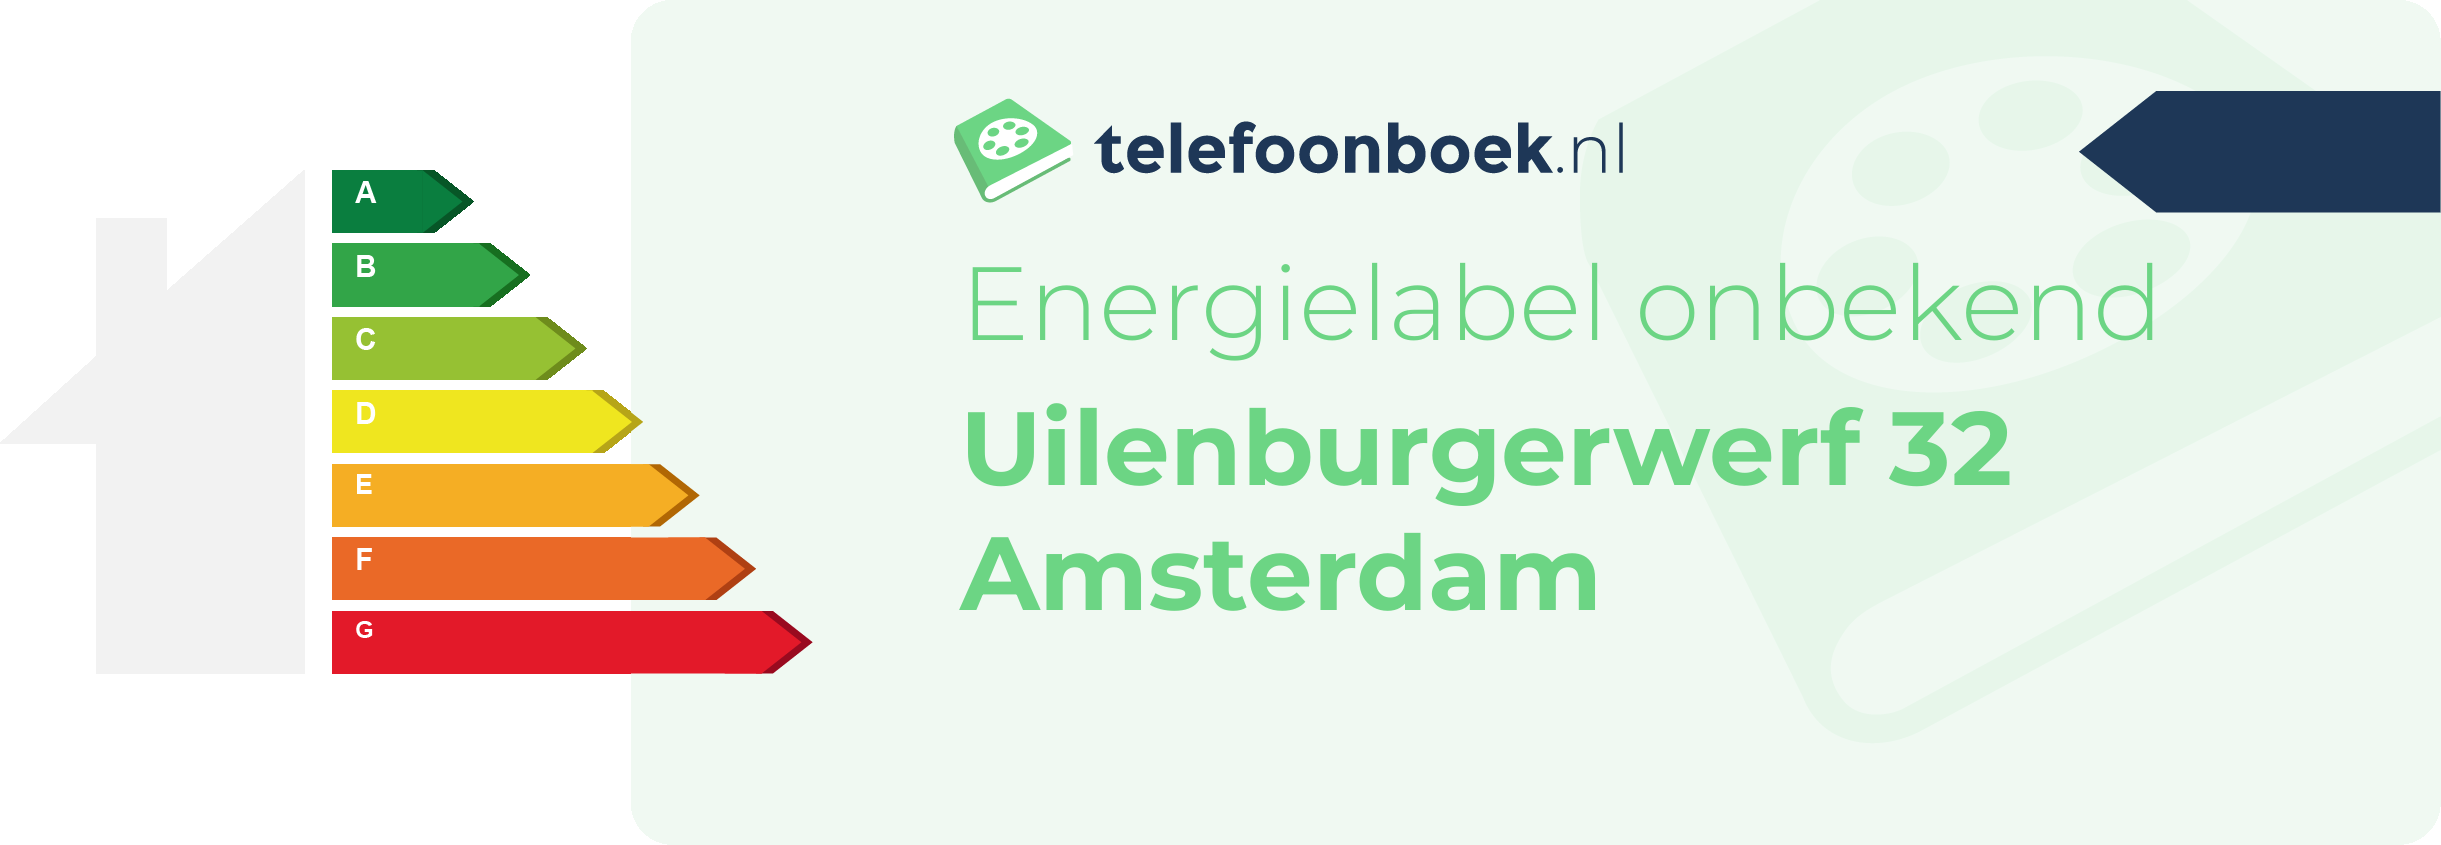 Energielabel Uilenburgerwerf 32 Amsterdam